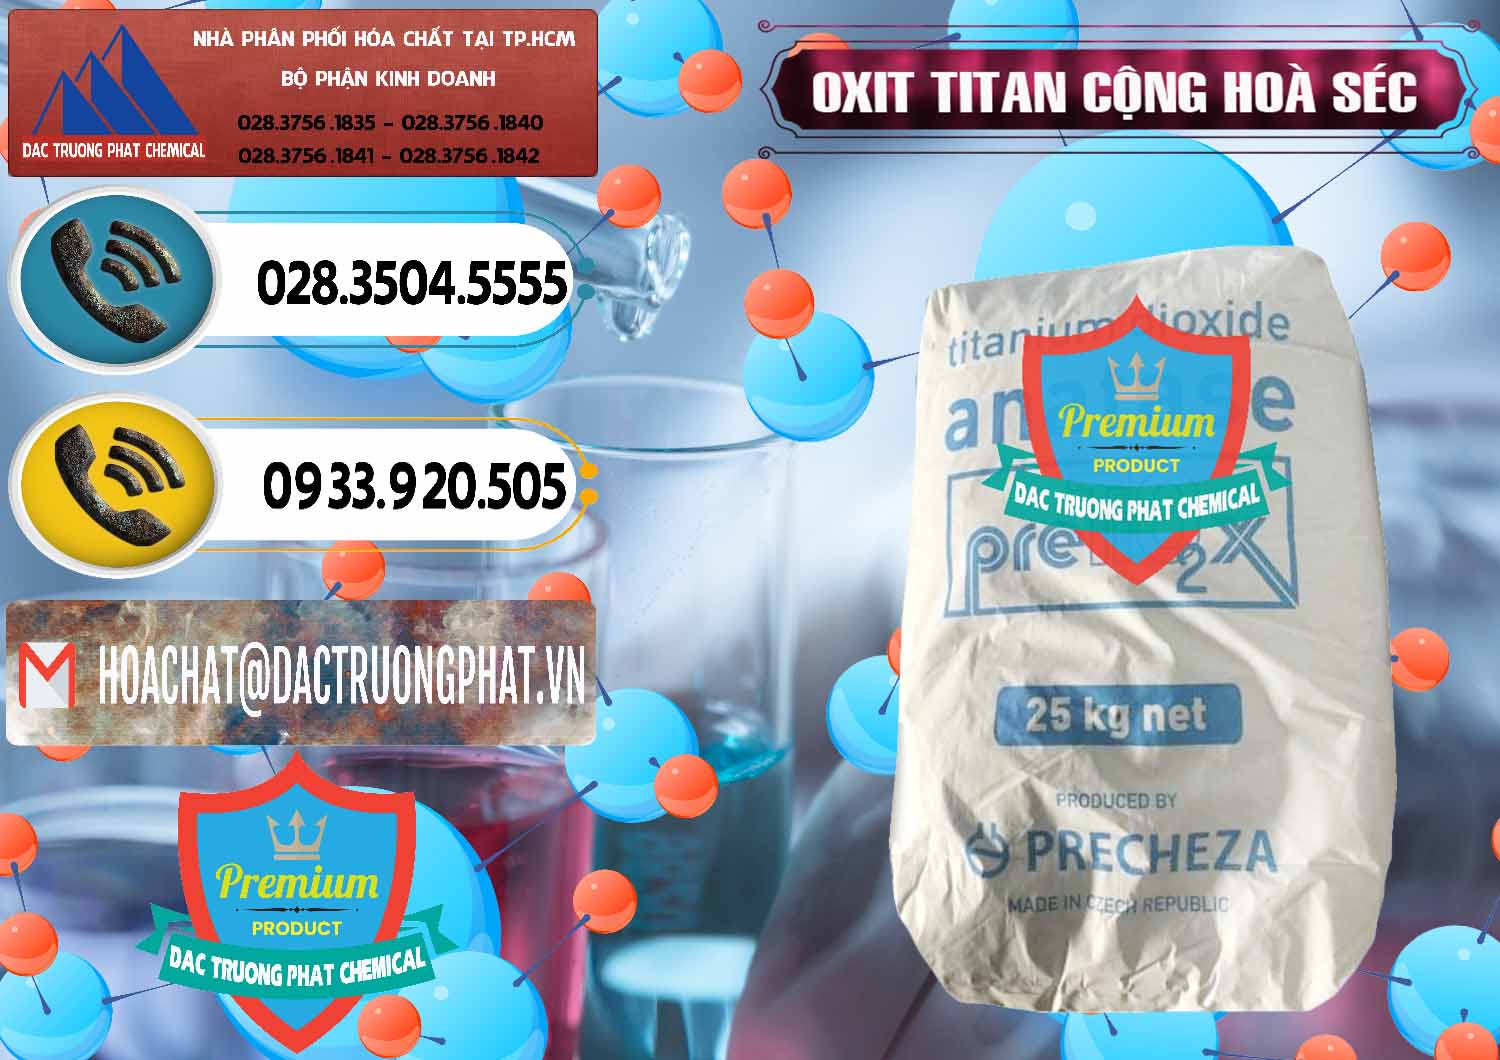 Công ty chuyên bán _ phân phối Oxit Titan KA100 – Tio2 Cộng Hòa Séc Czech Republic - 0407 - Nhà phân phối - cung cấp hóa chất tại TP.HCM - hoachatdetnhuom.vn